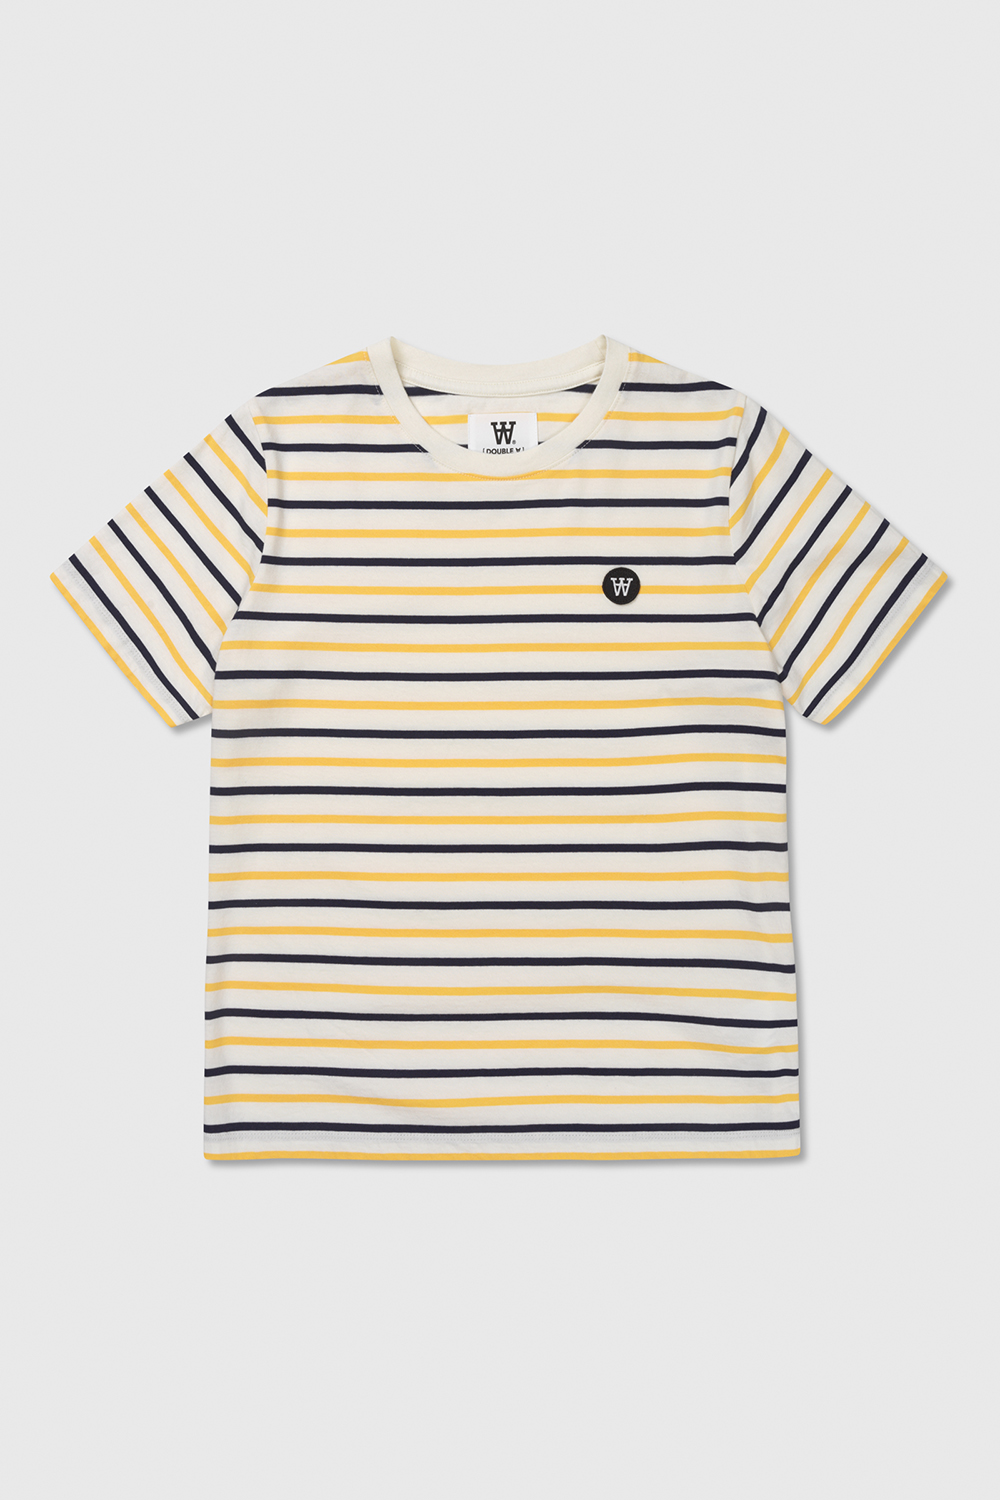  Double A Mia T-shirt, Off White/Yellow Stripes, S